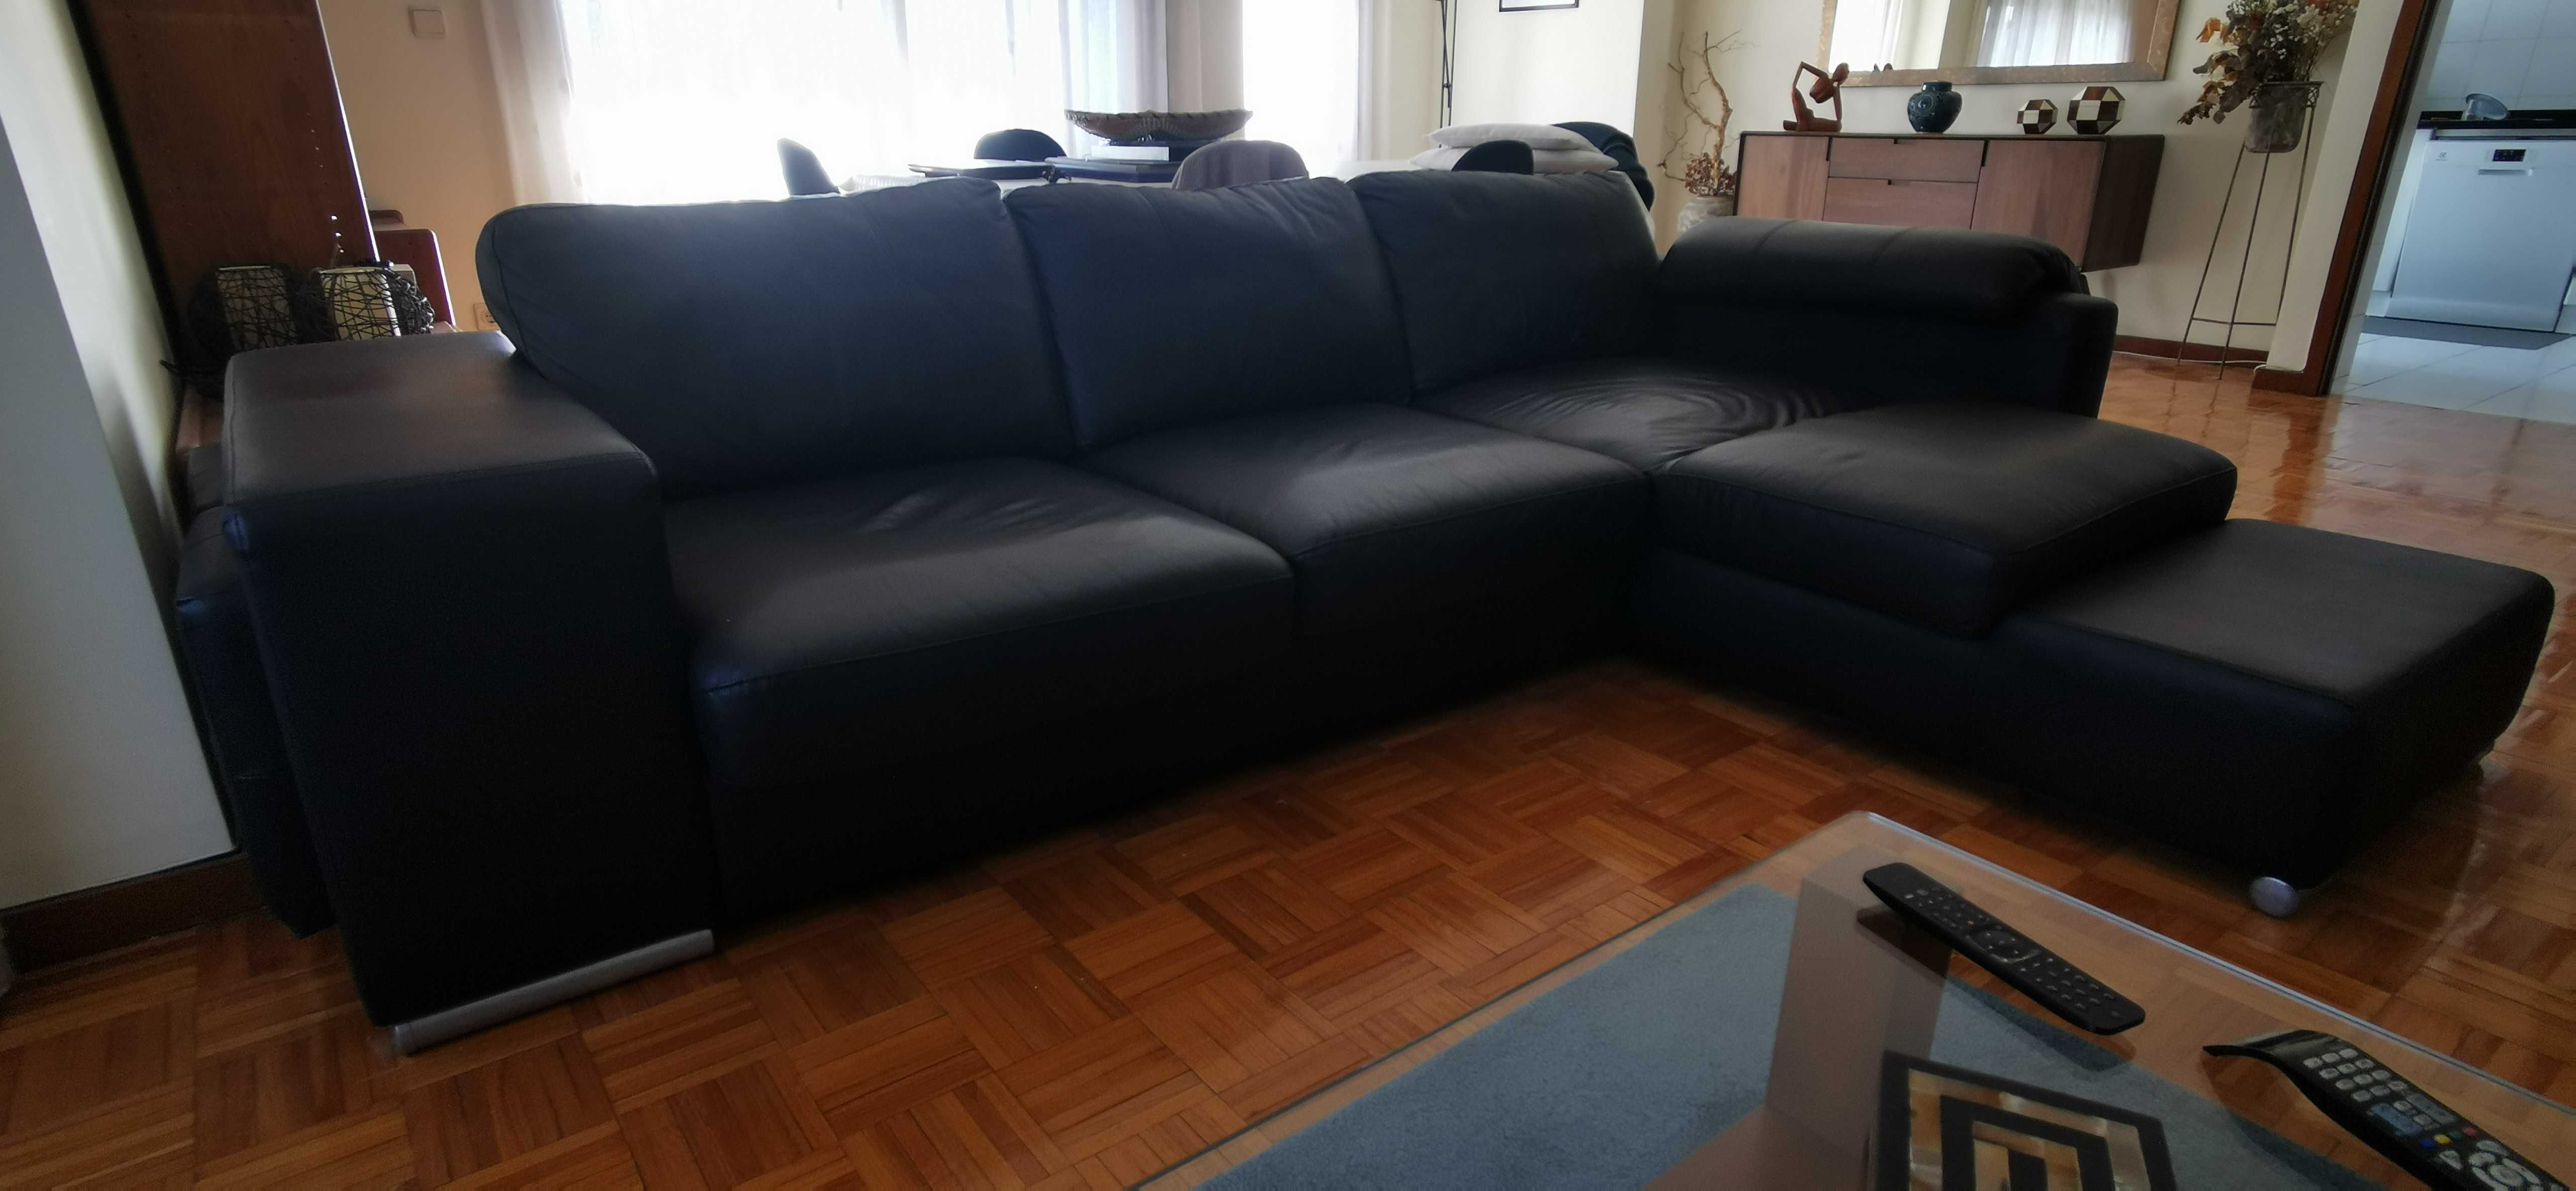 Sofá chaise longue, preto em pele, de três lugares